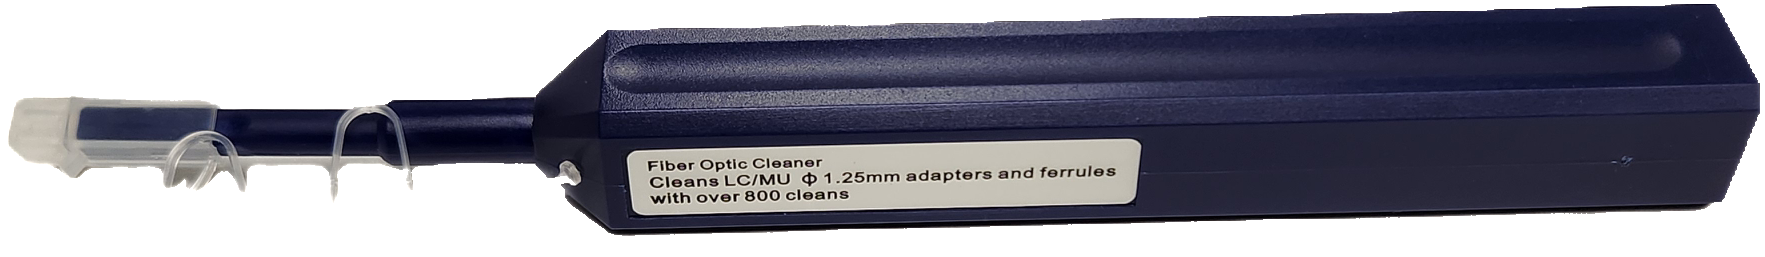 GD-FIB-1201 1.25mm Fiber Cleaner Pen (LC/MU Cleaner Pen)